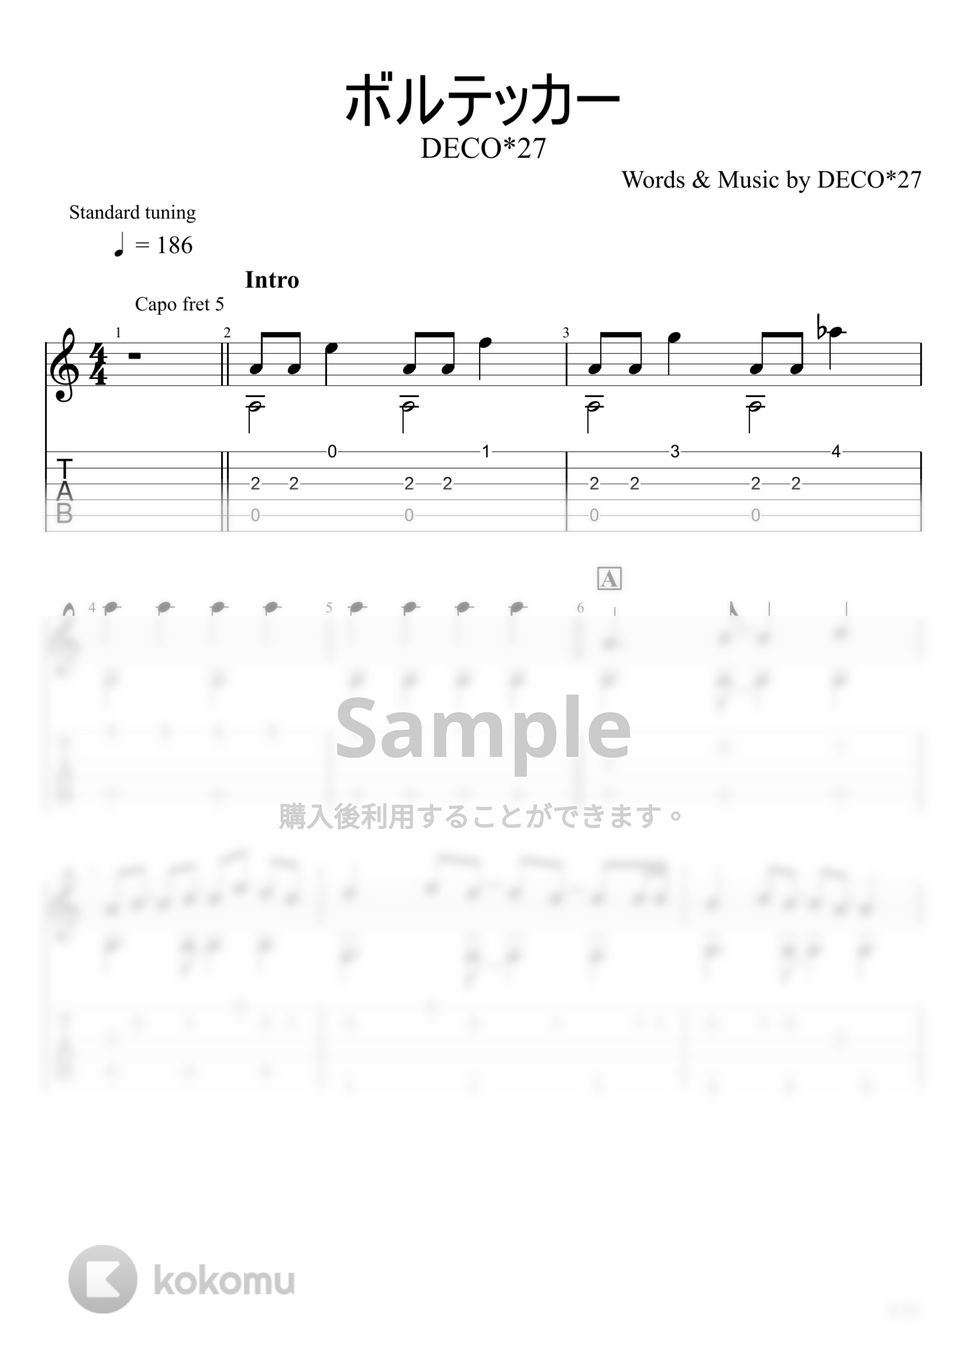 DECO*27 - ボルテッカー (ソロギター) by u3danchou